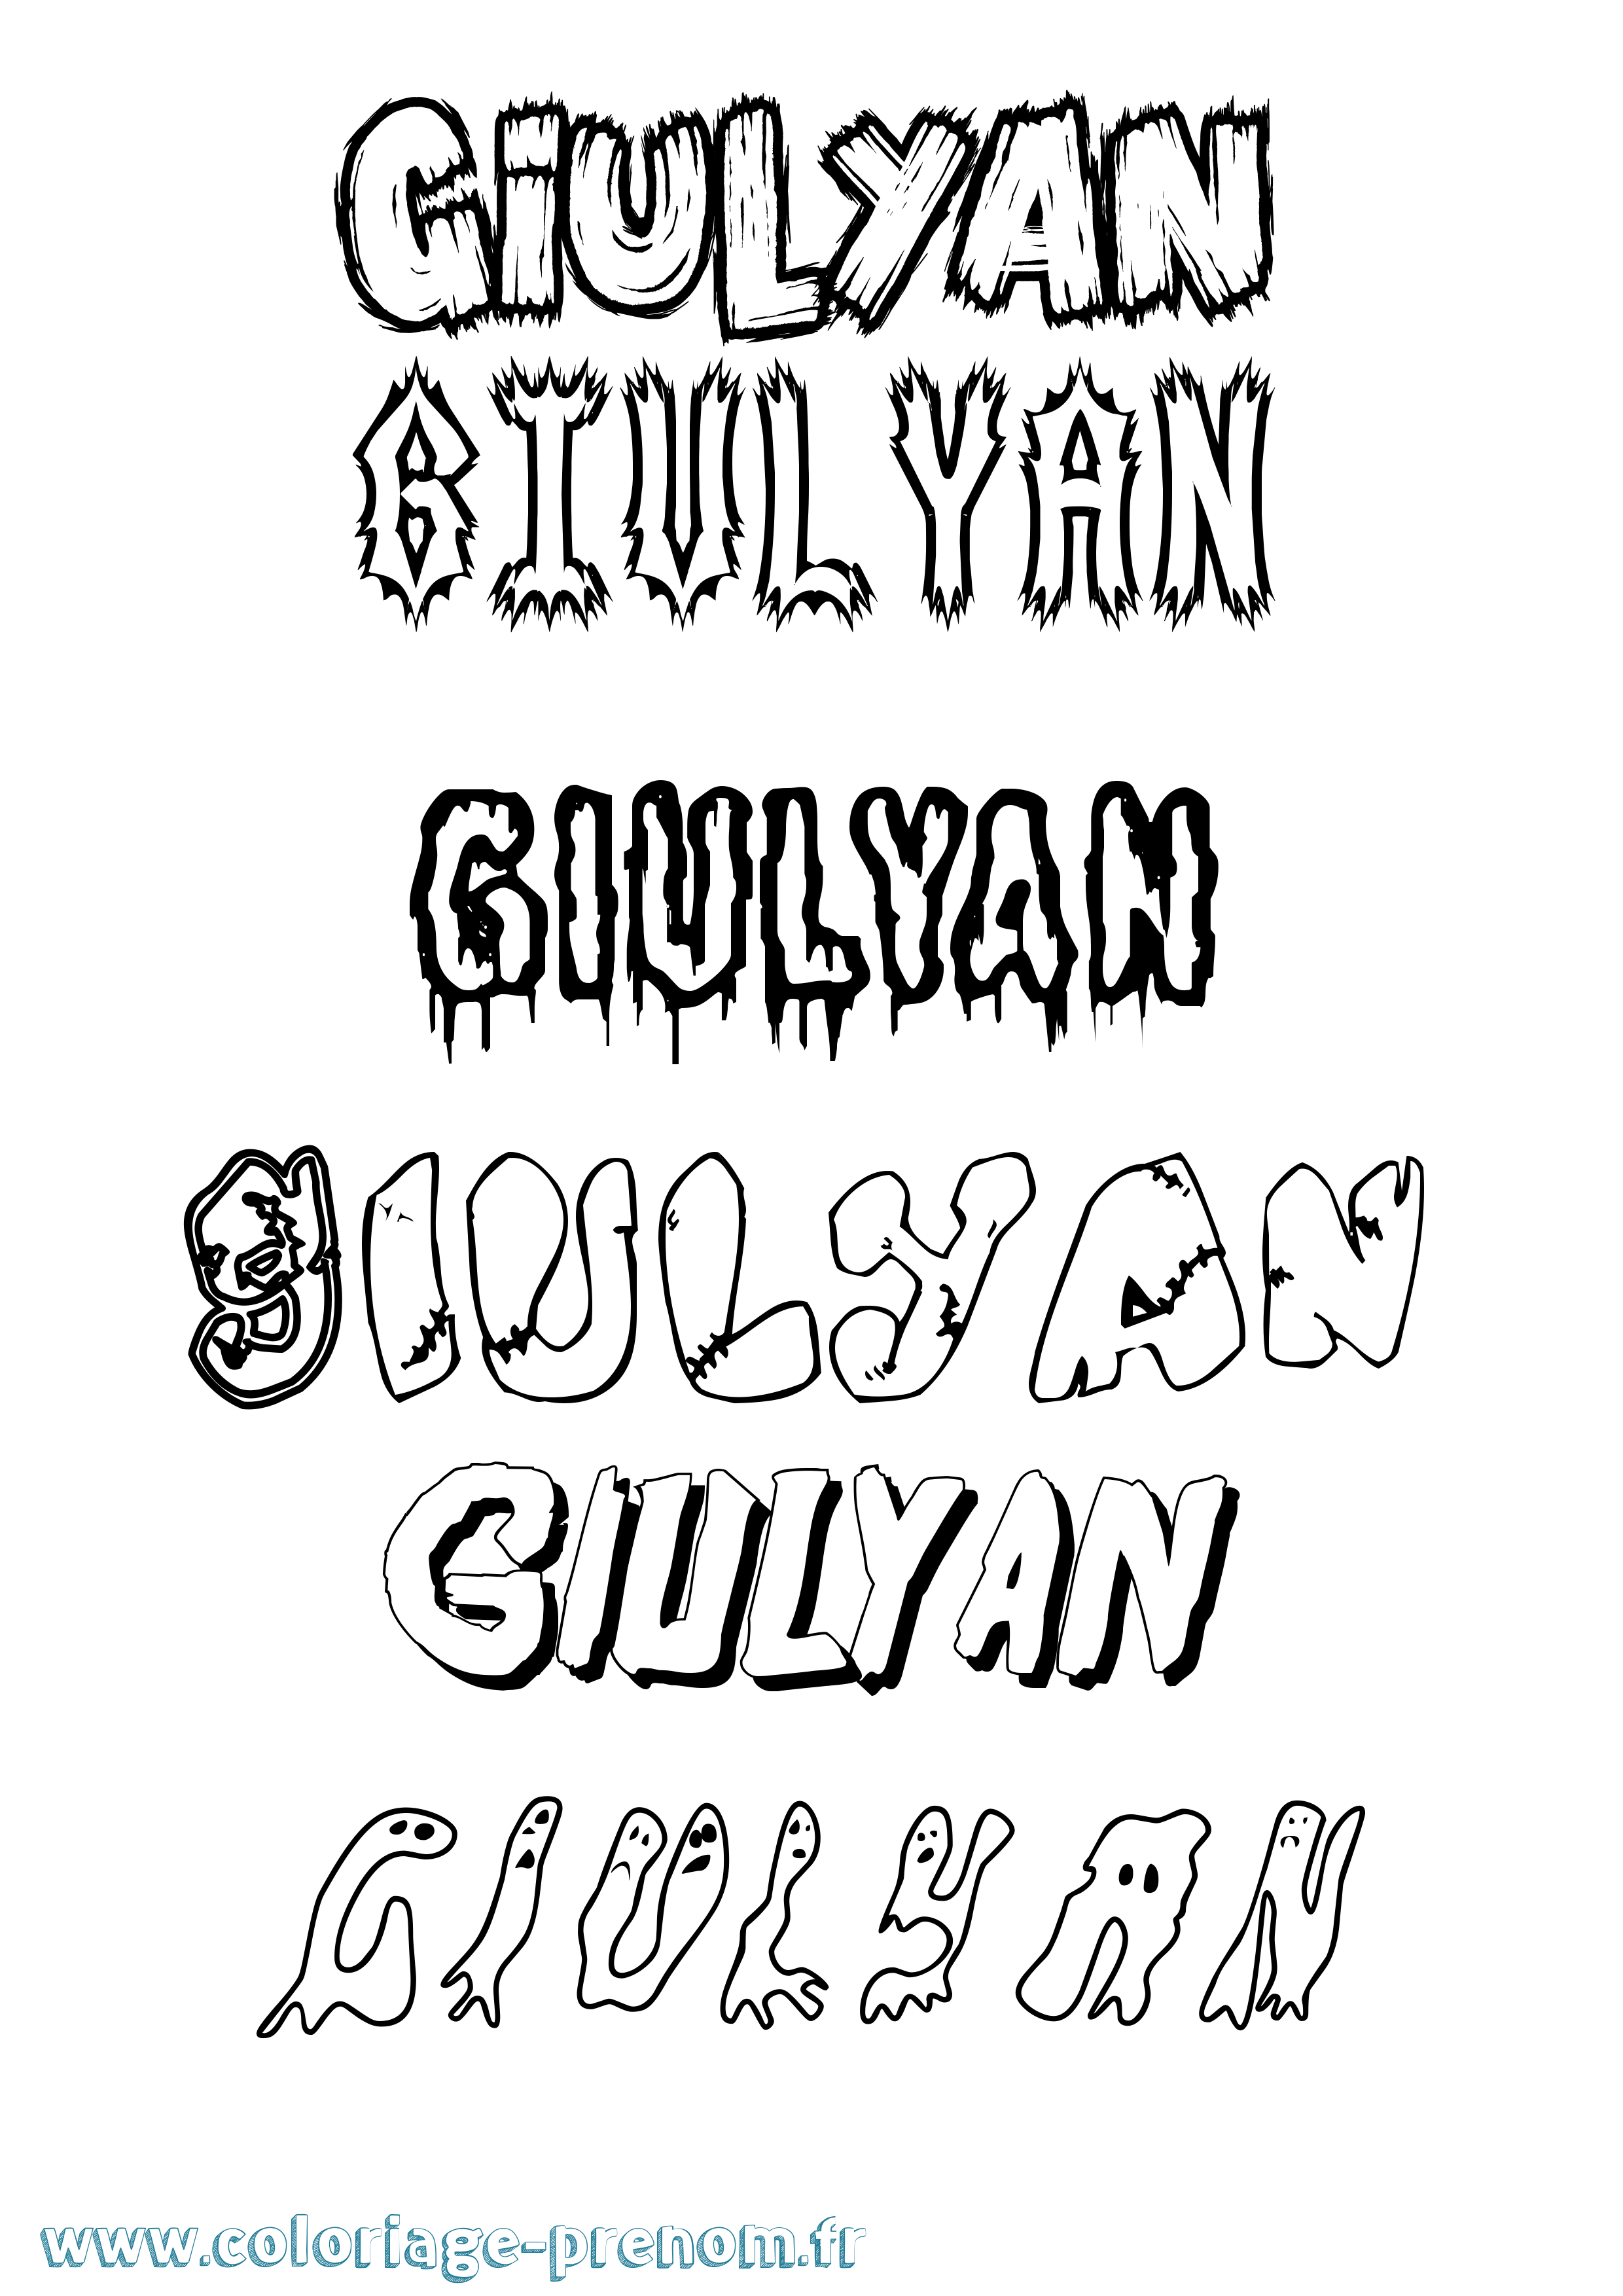 Coloriage prénom Giulyan Frisson